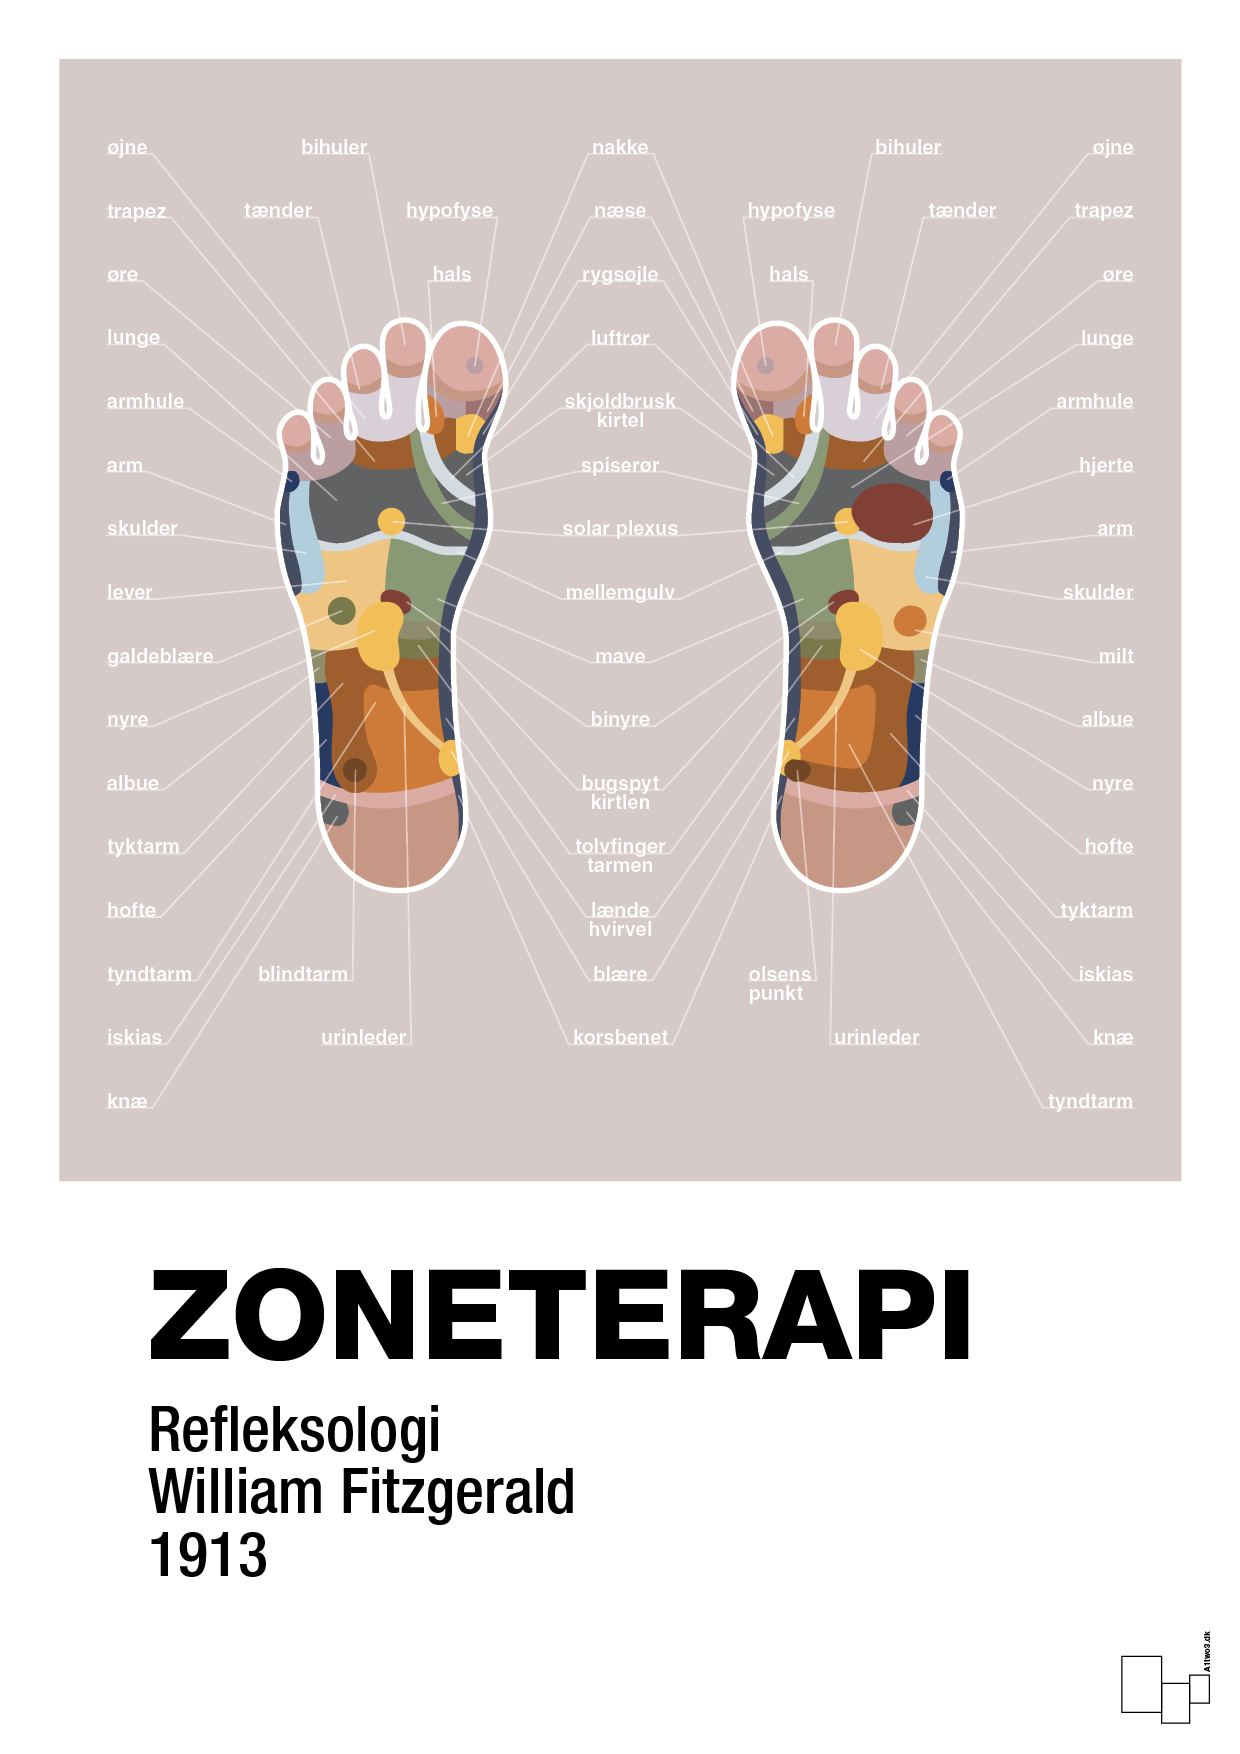 zoneterapi - Plakat med Videnskab i Broken Beige